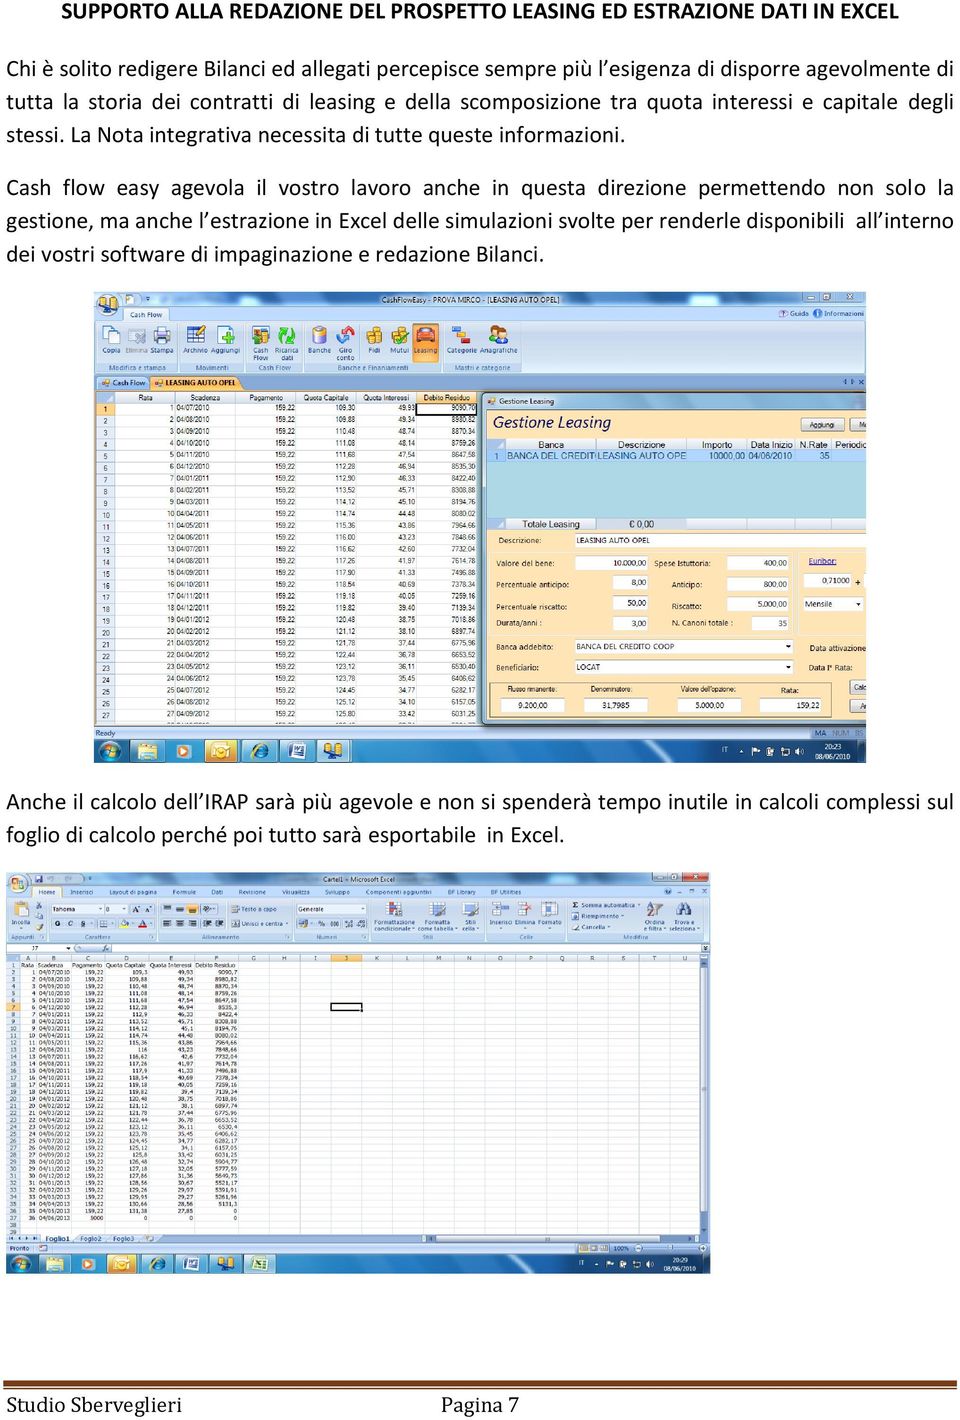 Cash flow easy agevola il vostro lavoro anche in questa direzione permettendo non solo la gestione, ma anche l estrazione in Excel delle simulazioni svolte per renderle disponibili all interno dei